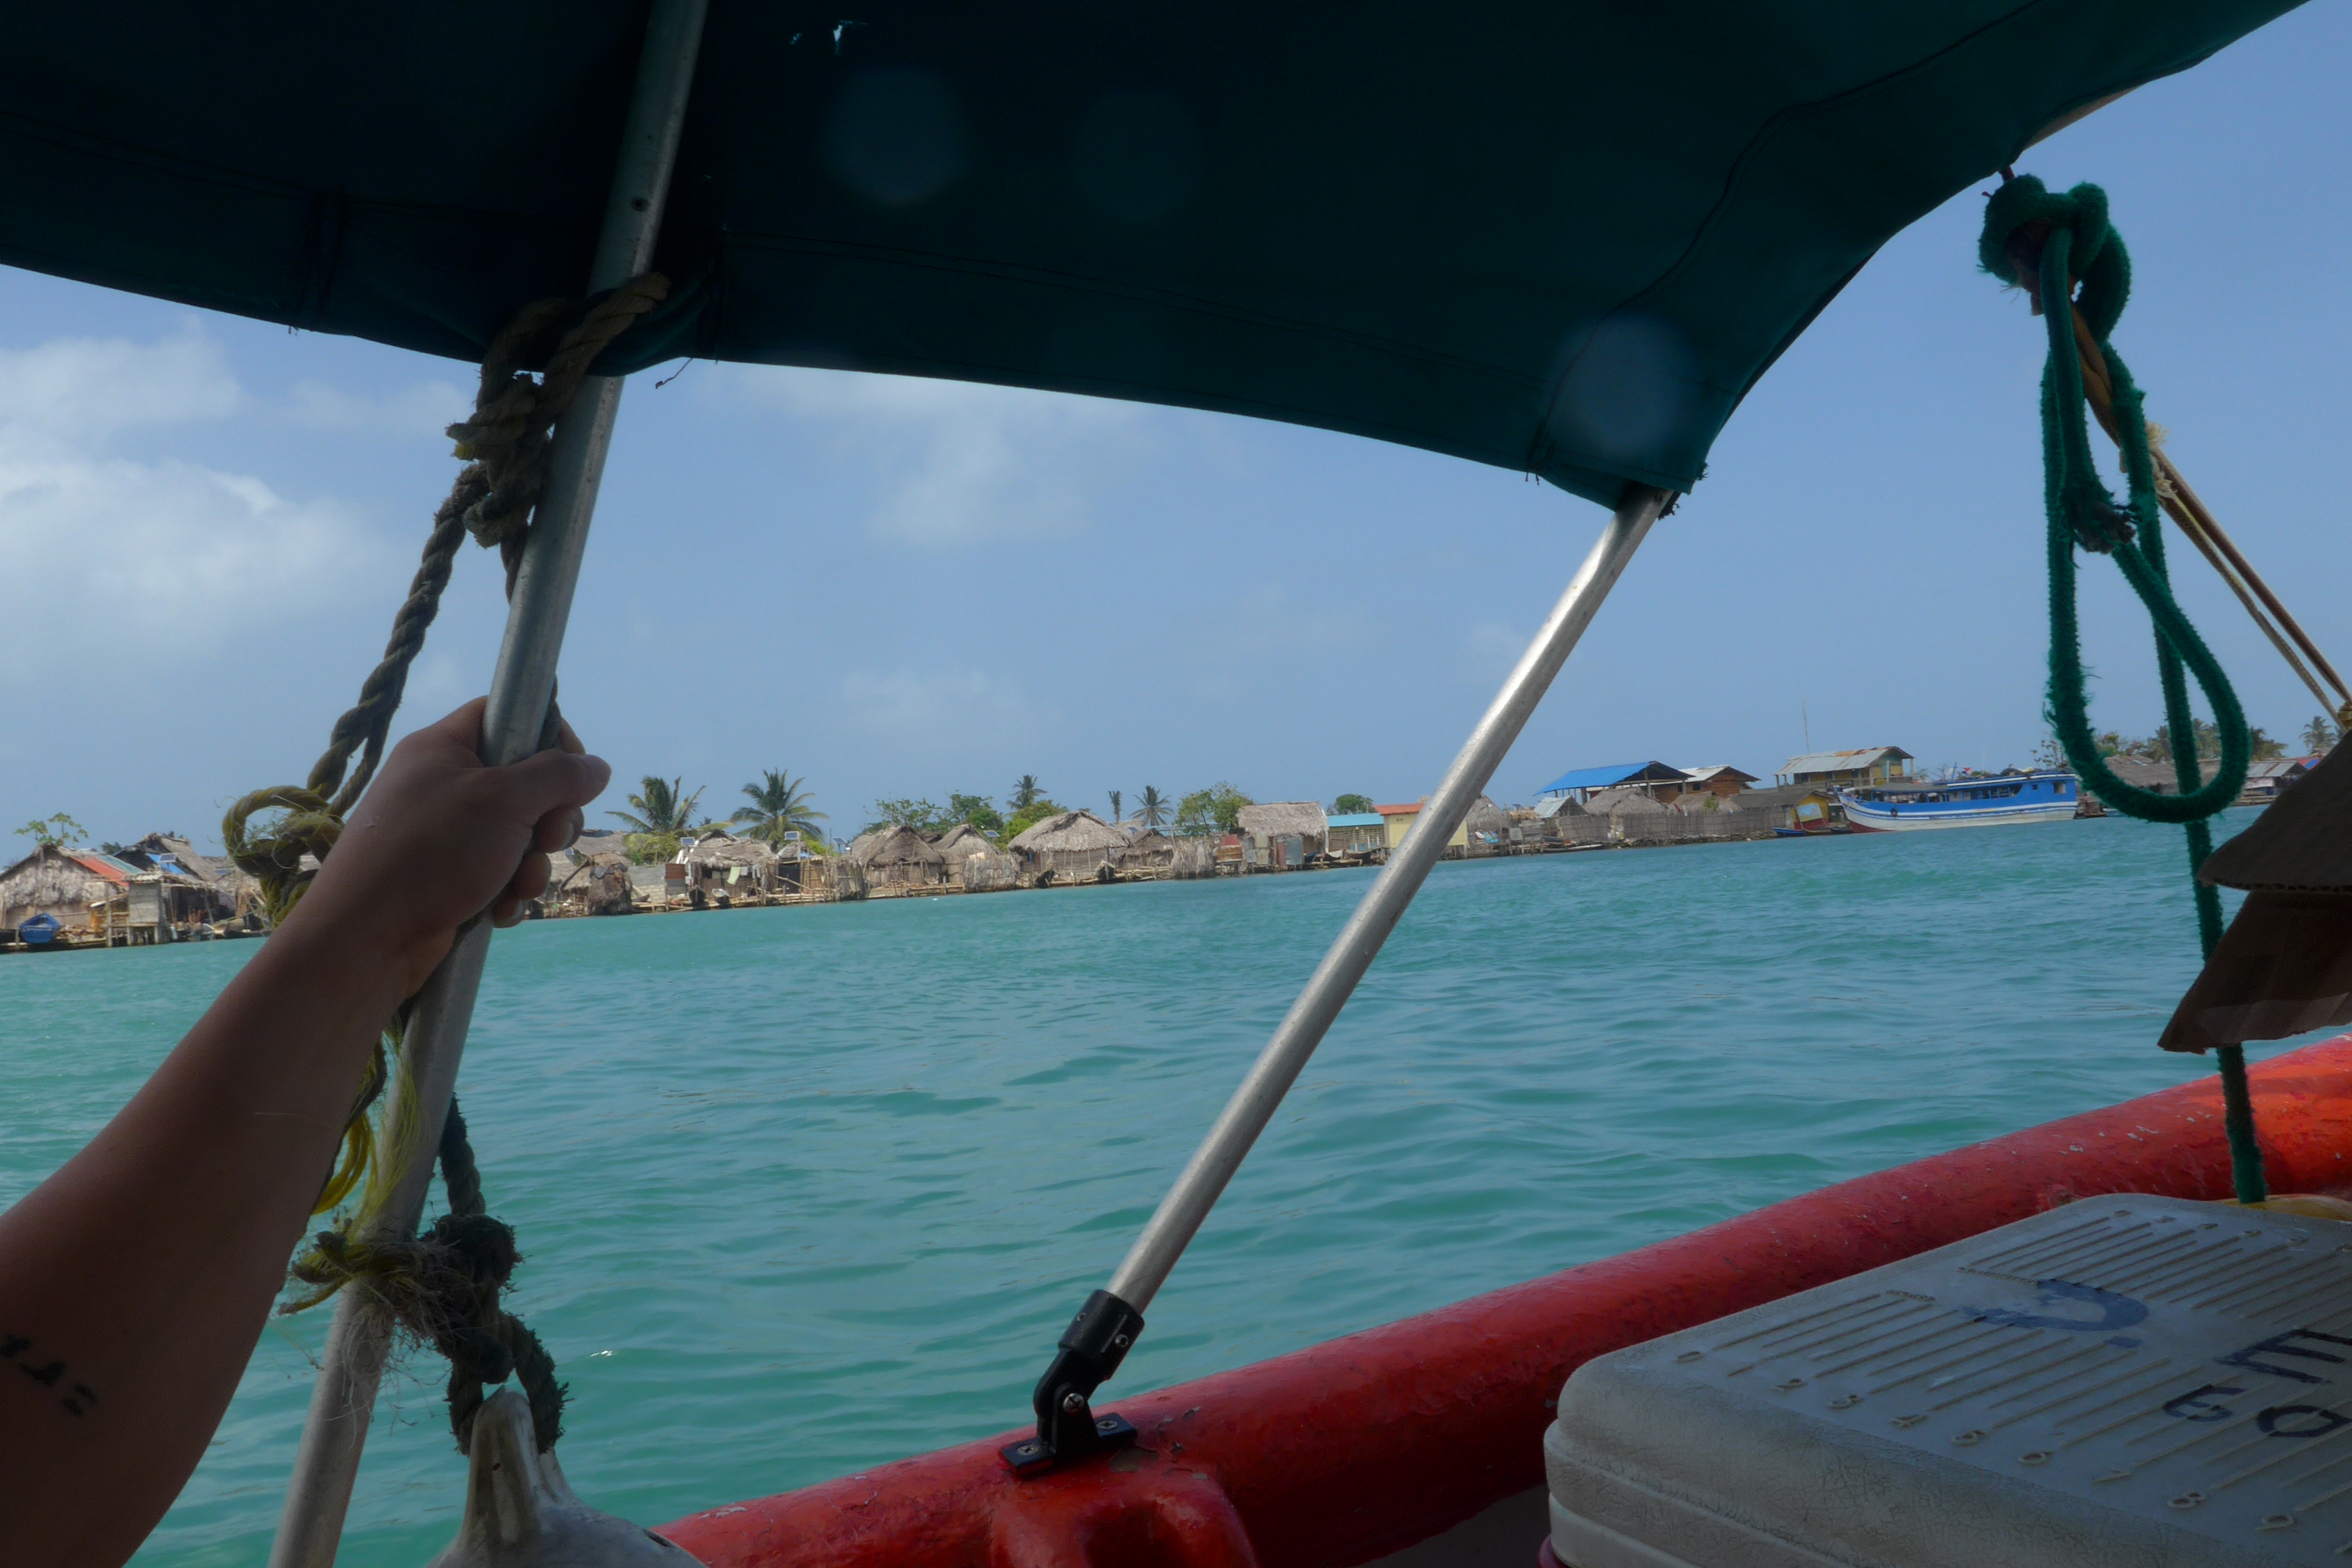 Boat ride to Achutupu village